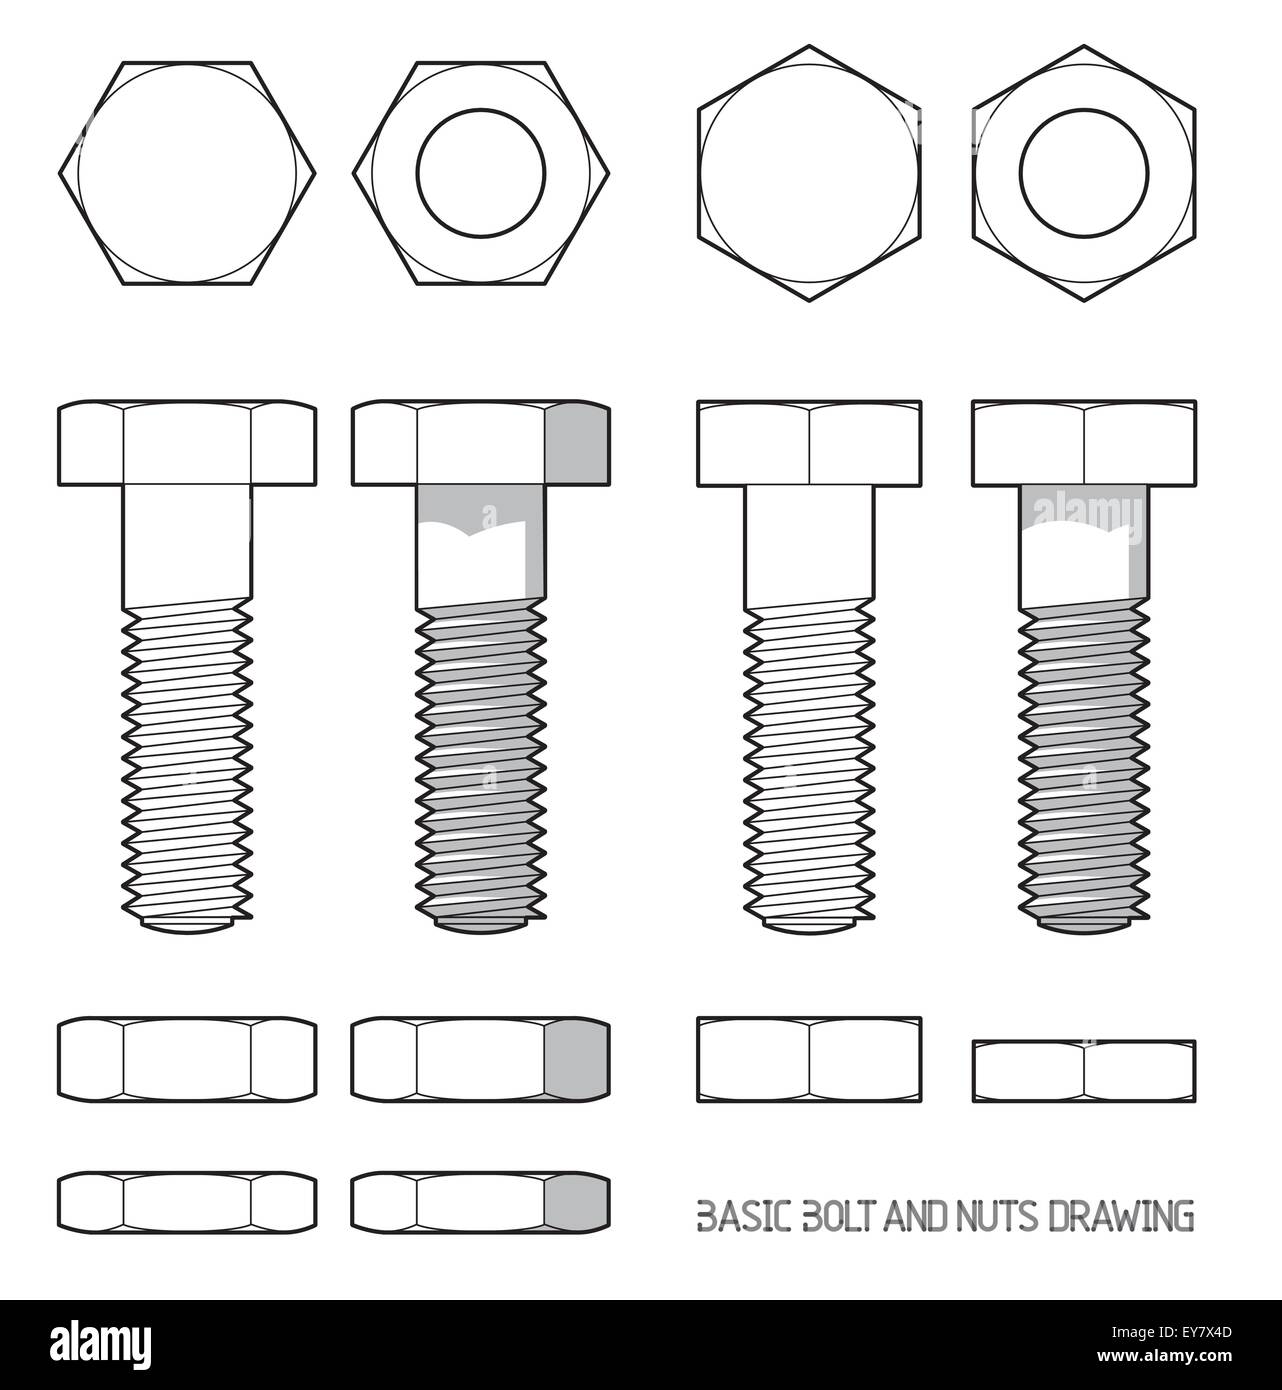 Vis et écrous hexagonaux en projection orthogonale Banque D'Images